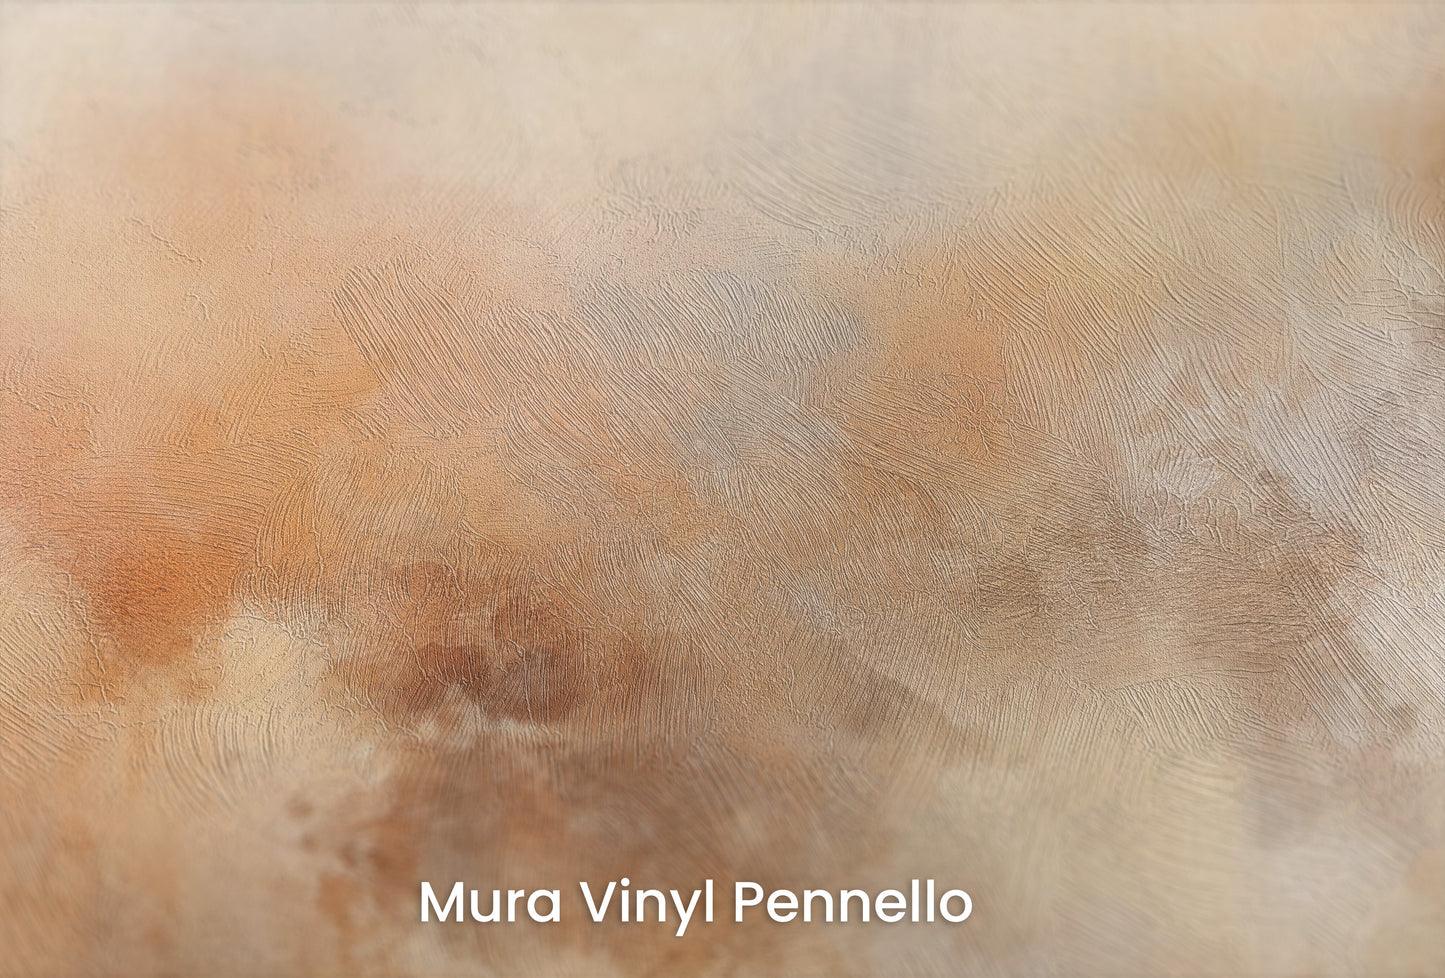 Zbliżenie na artystyczną fototapetę o nazwie AMBER DAWN ABSTRACT na podłożu Mura Vinyl Pennello - faktura pociągnięć pędzla malarskiego.